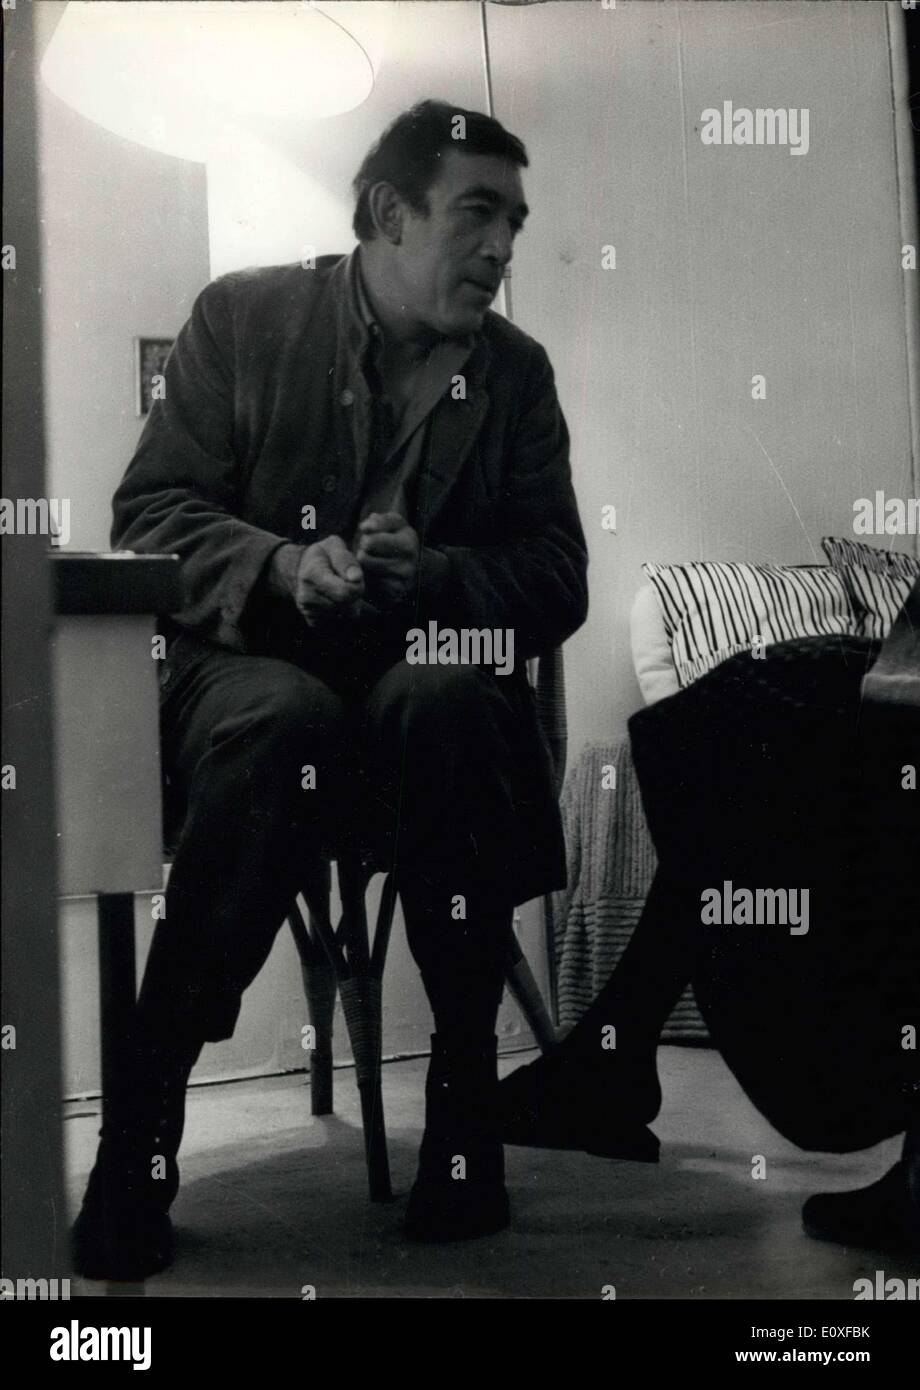 Sett. 07, 1966 - Anthony Quinn stelle nel nuovo film: Anthony Quinn stelle nel nuovo film ''venticinquesima ora'' ora fatto a Parigi. Mostra fotografica di Anthony Quinn preparando una scena davanti a uno specchio nel suo spogliatoio. Foto Stock